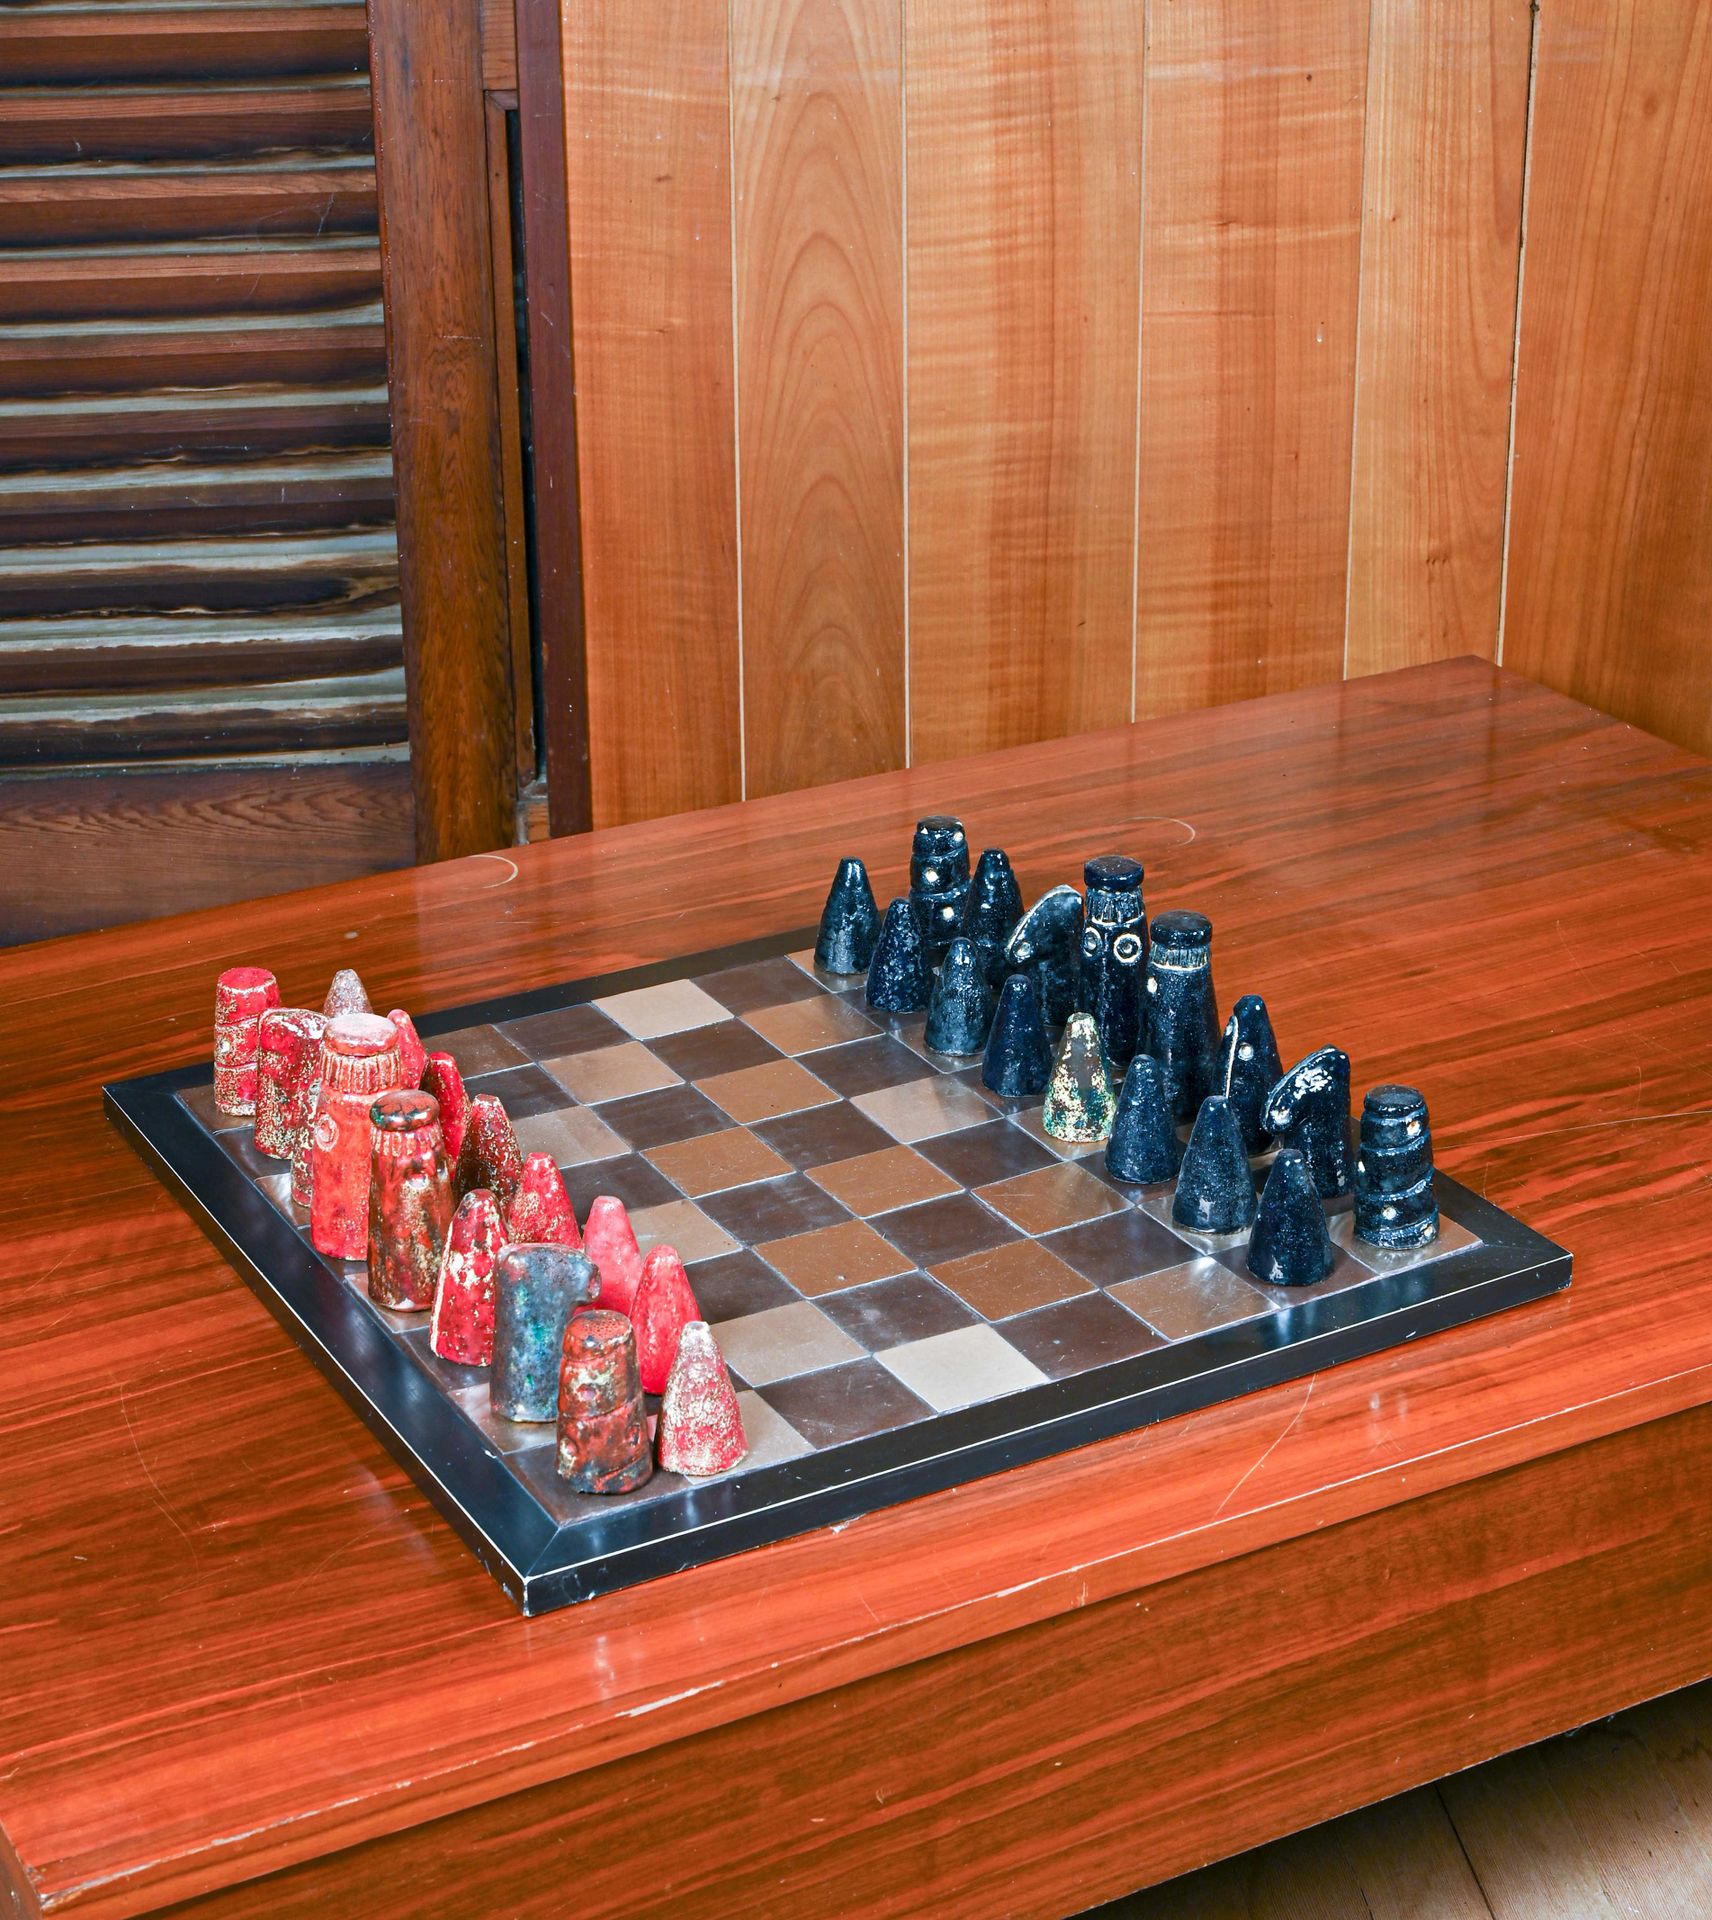 TRAVAIL DES ANNÉES 1960 Un jeu d’échecs

Pions en céramique vernissé en forme de&hellip;